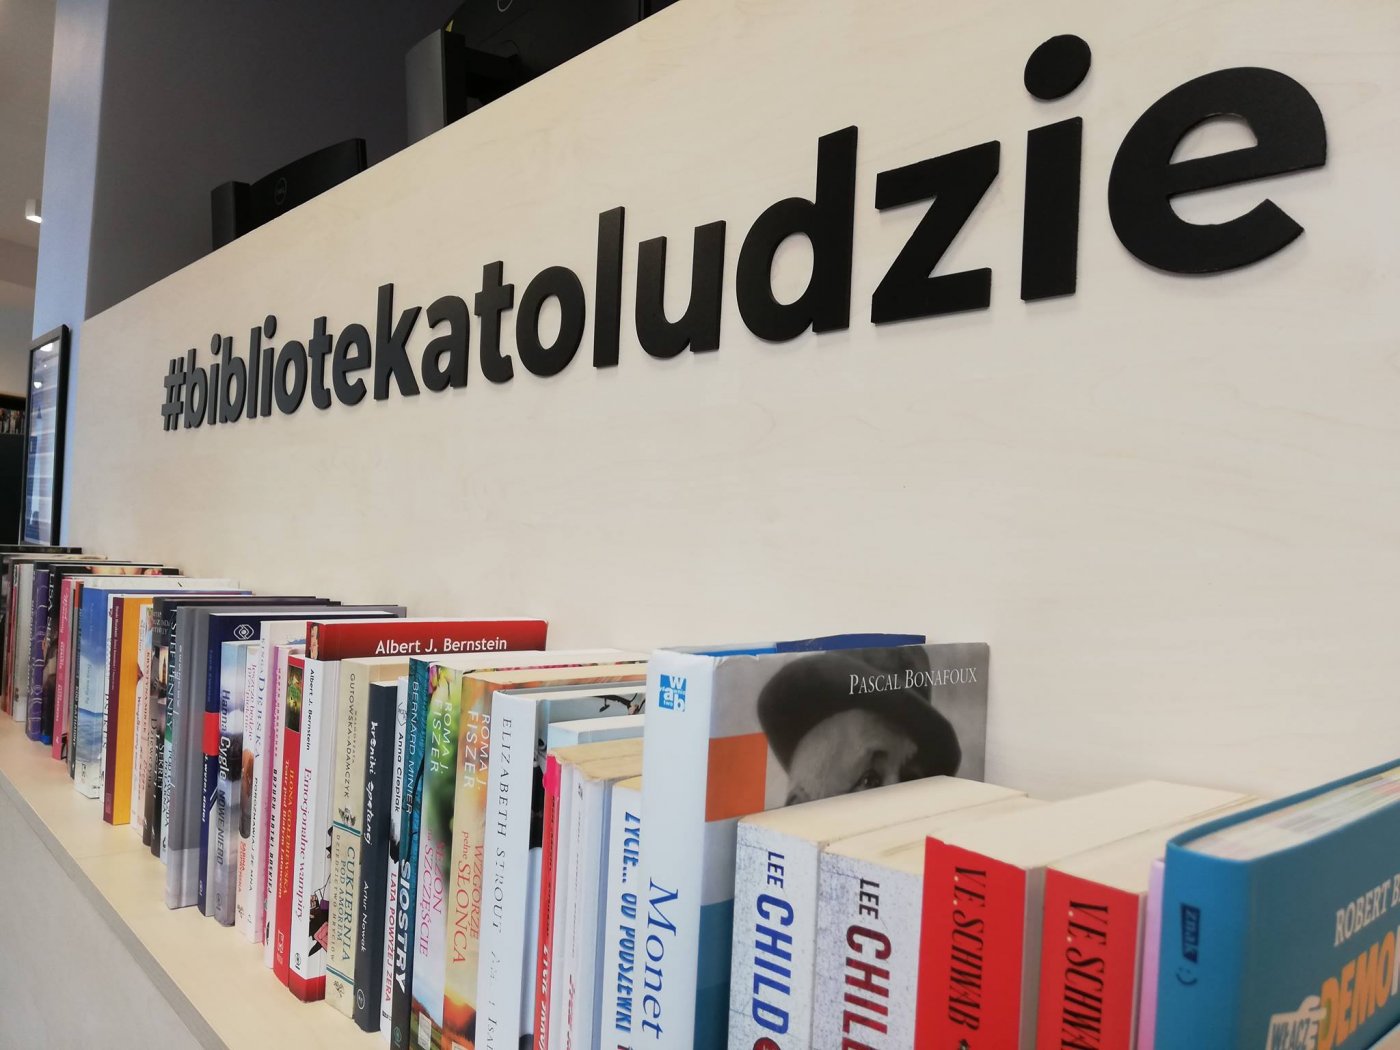 Półka z książkami w Bibliotece Gdynia i hasło #bibliotekatoludzie. Fot. Archiwum Biblioteki Gdynia